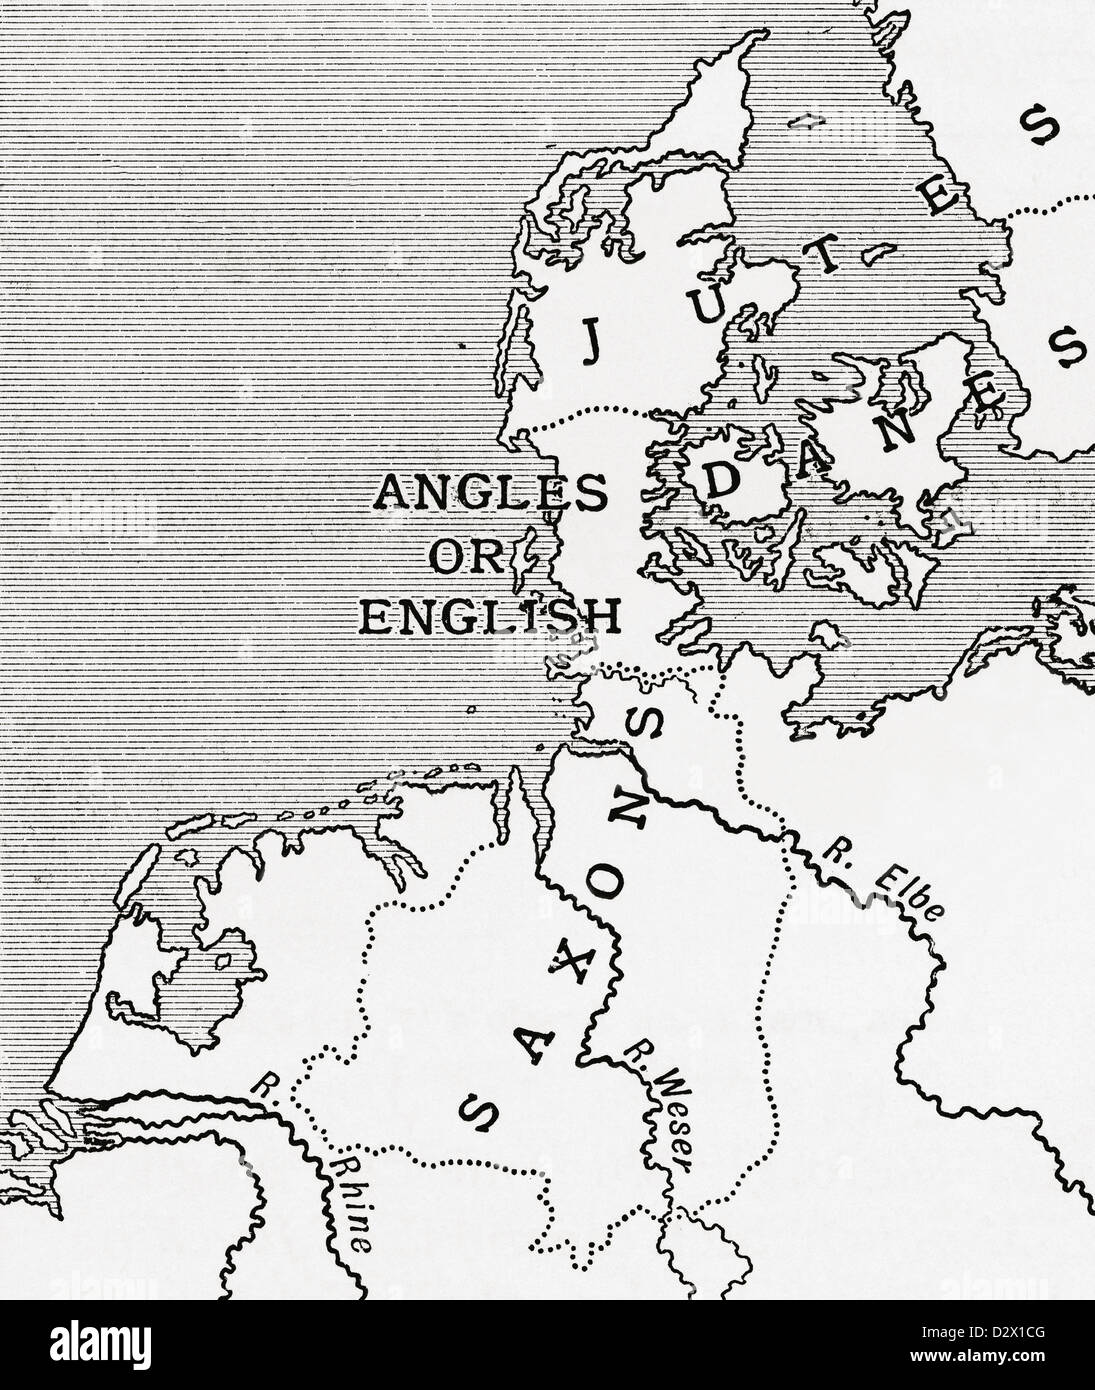 Carte montrant l'ancienne maison de l'anglais dans le 5ème siècle. À partir d'un premier livre de l'histoire britannique publié en 1925. Banque D'Images